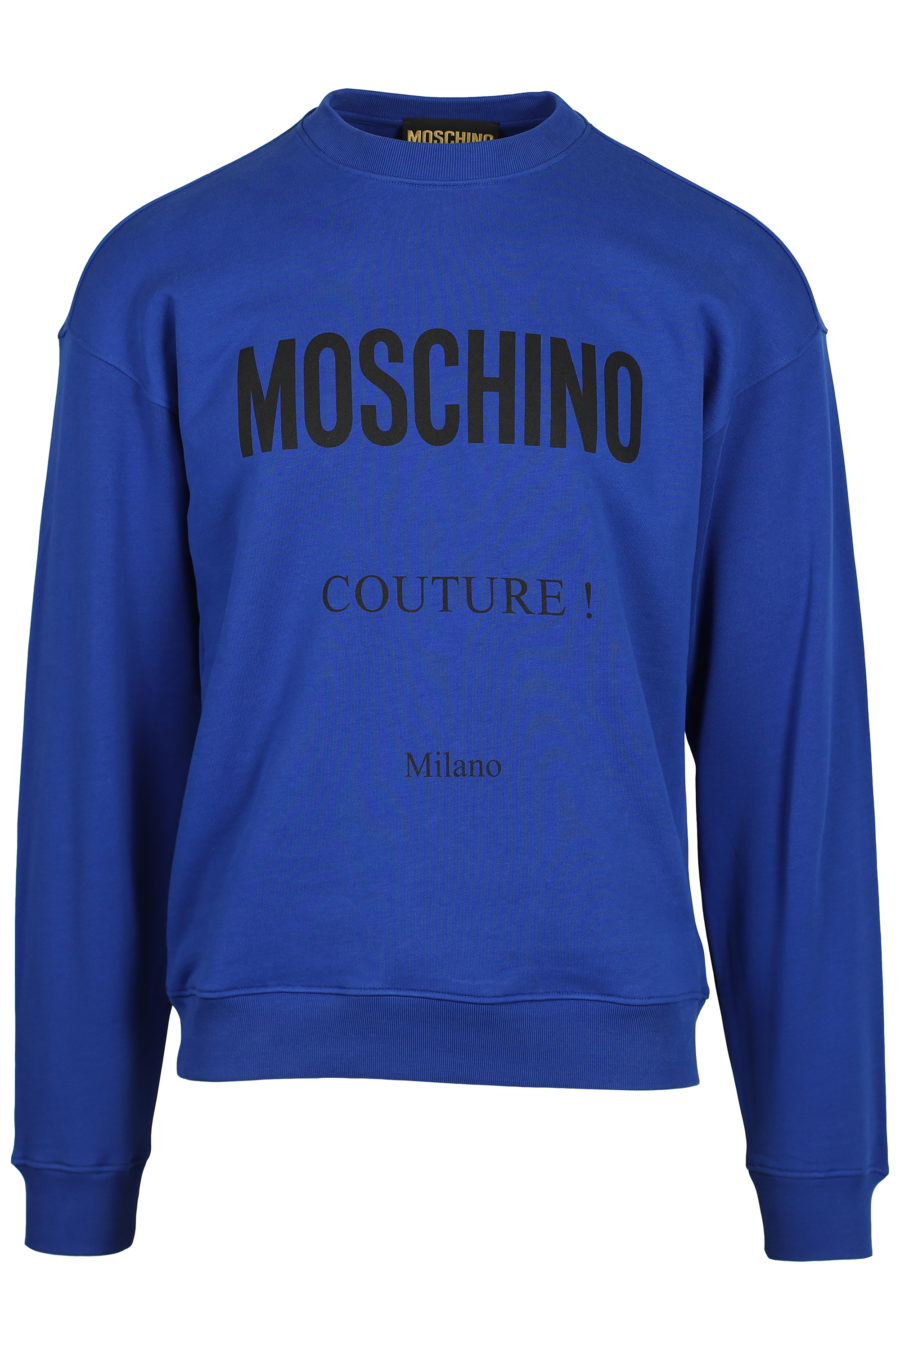 Logo du sweat-shirt bleu électrique "Couture Milano" - IMG 2549